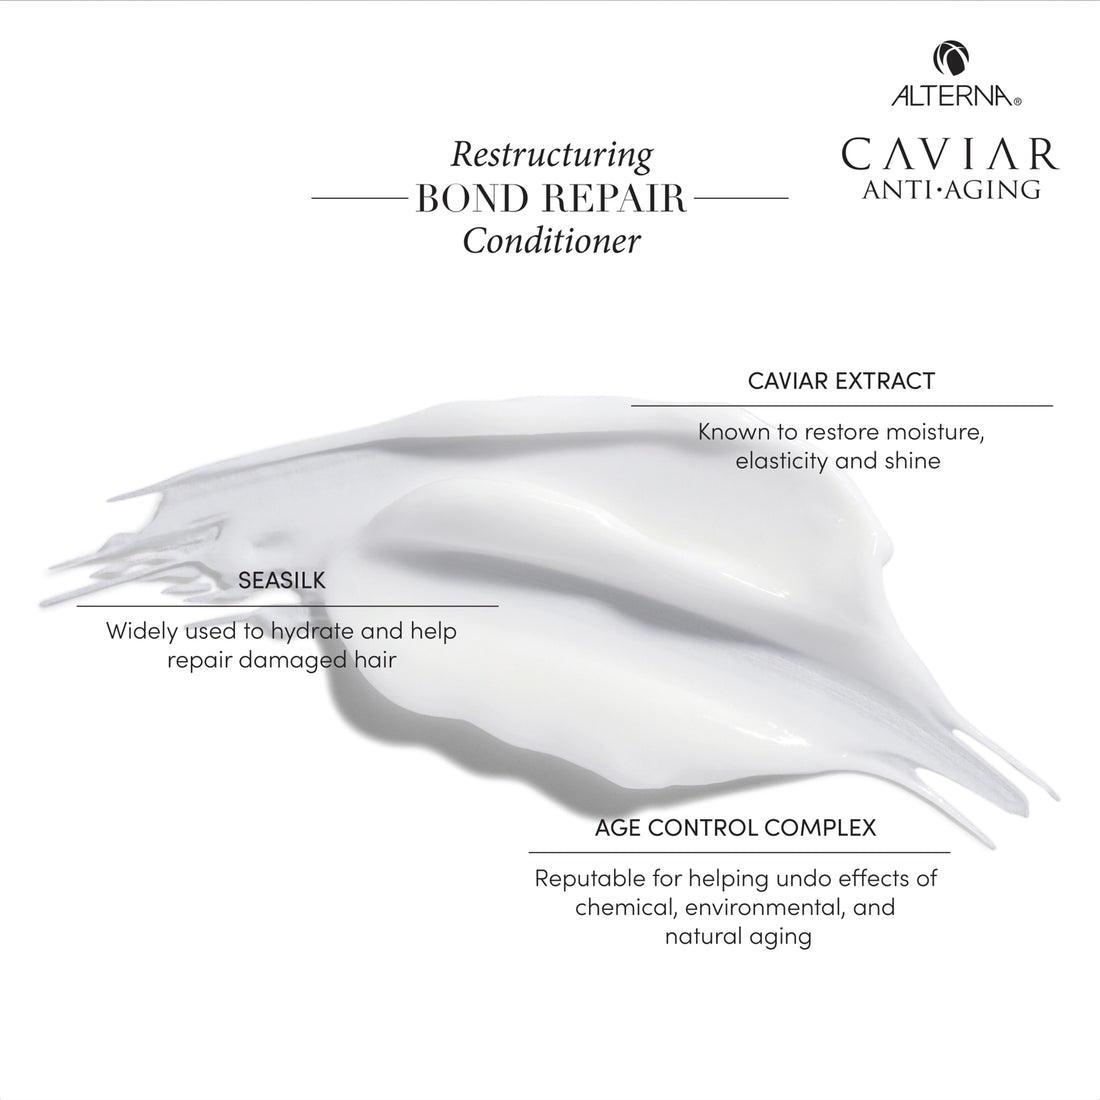 Caviar Anti-Aging Restructuring Bond Repair Conditioner